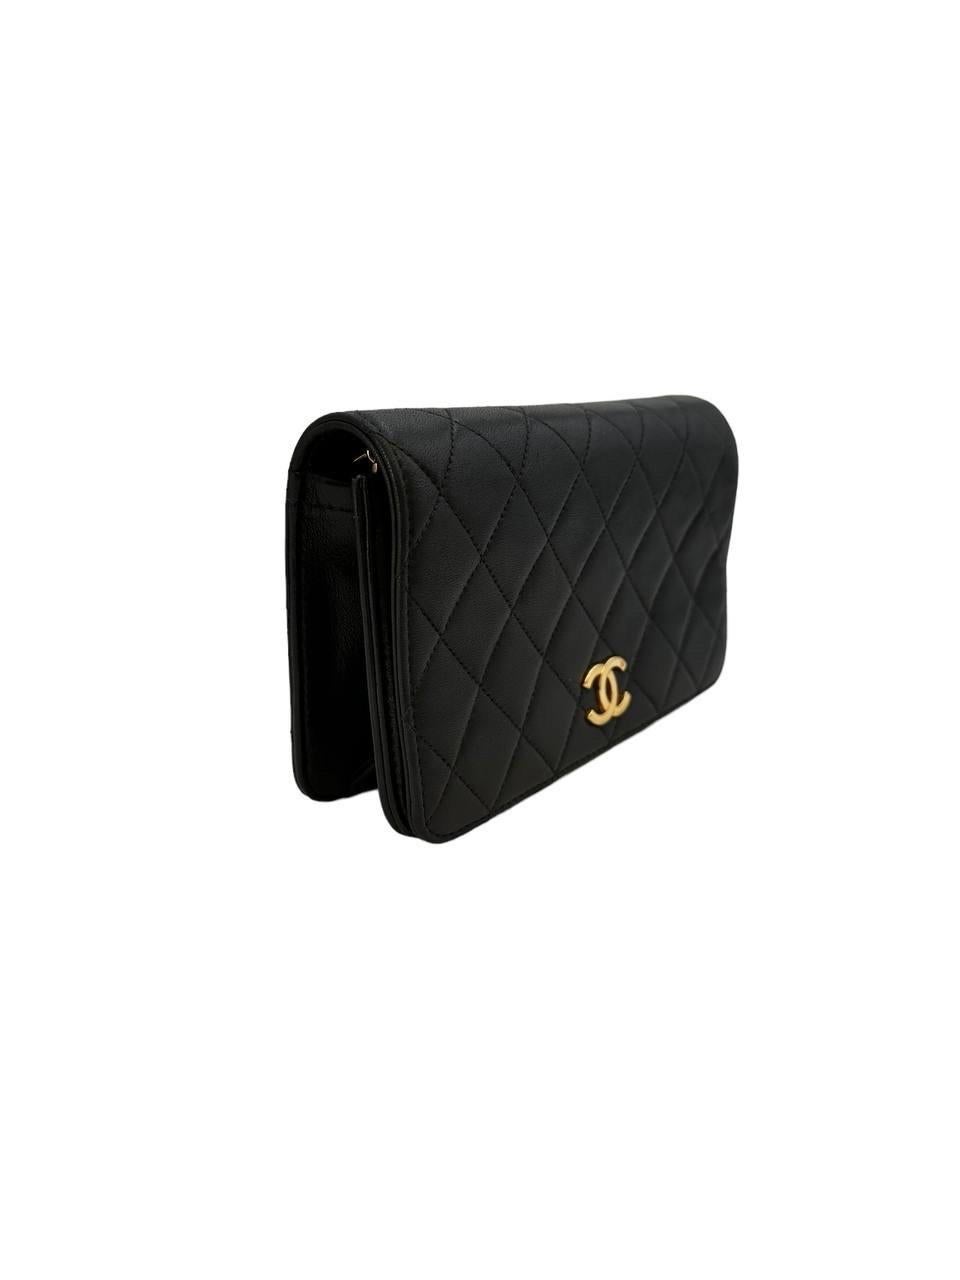 Borsa firmata Chanel, modello Wallet On Chain, realizzata in pelle trapuntata nera con hardware dorati. Dotata di una patta frontale con chiusura a incastro e logo ”CC”. Munita di una tracolla a scorrimento realizzata in pelle e catena intrecciata.